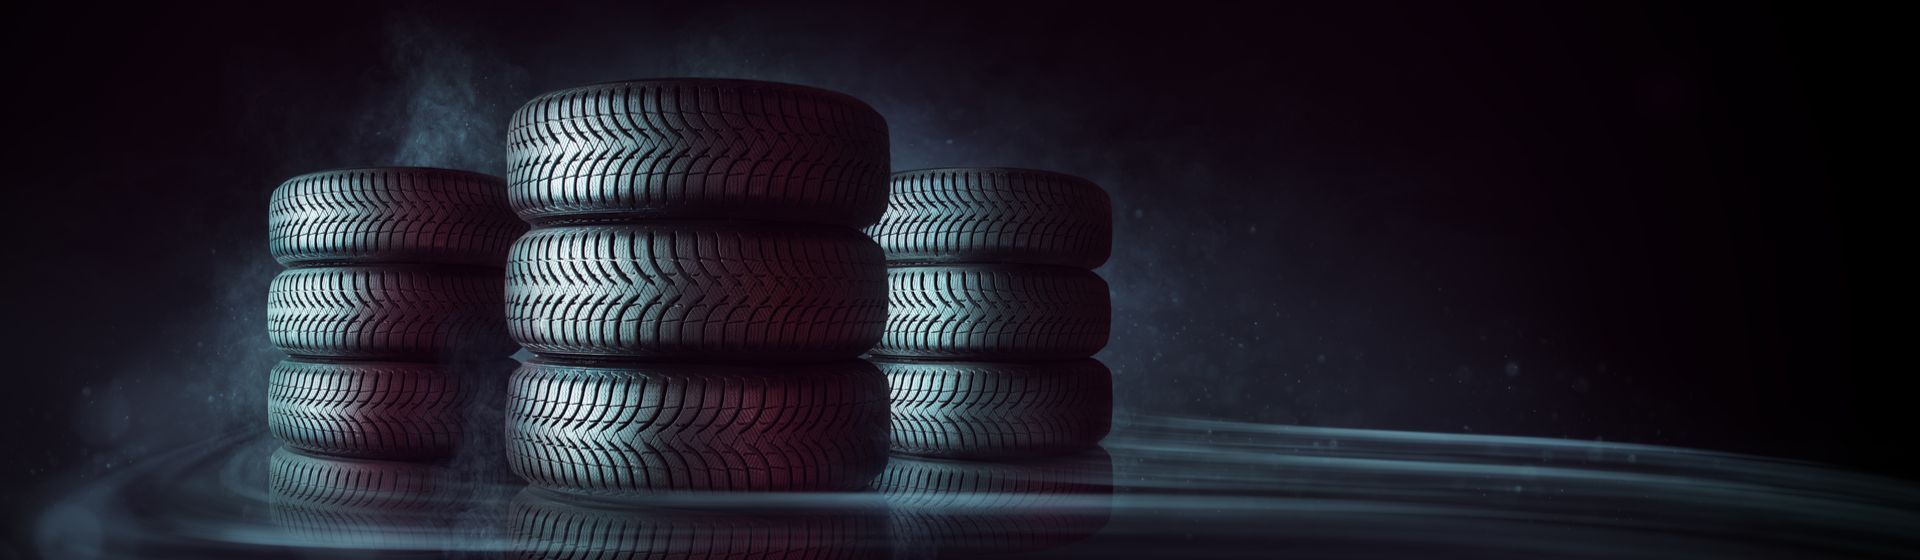 Como a escolha de pneus adequados pode influenciar o consumo de combustível do veículo?